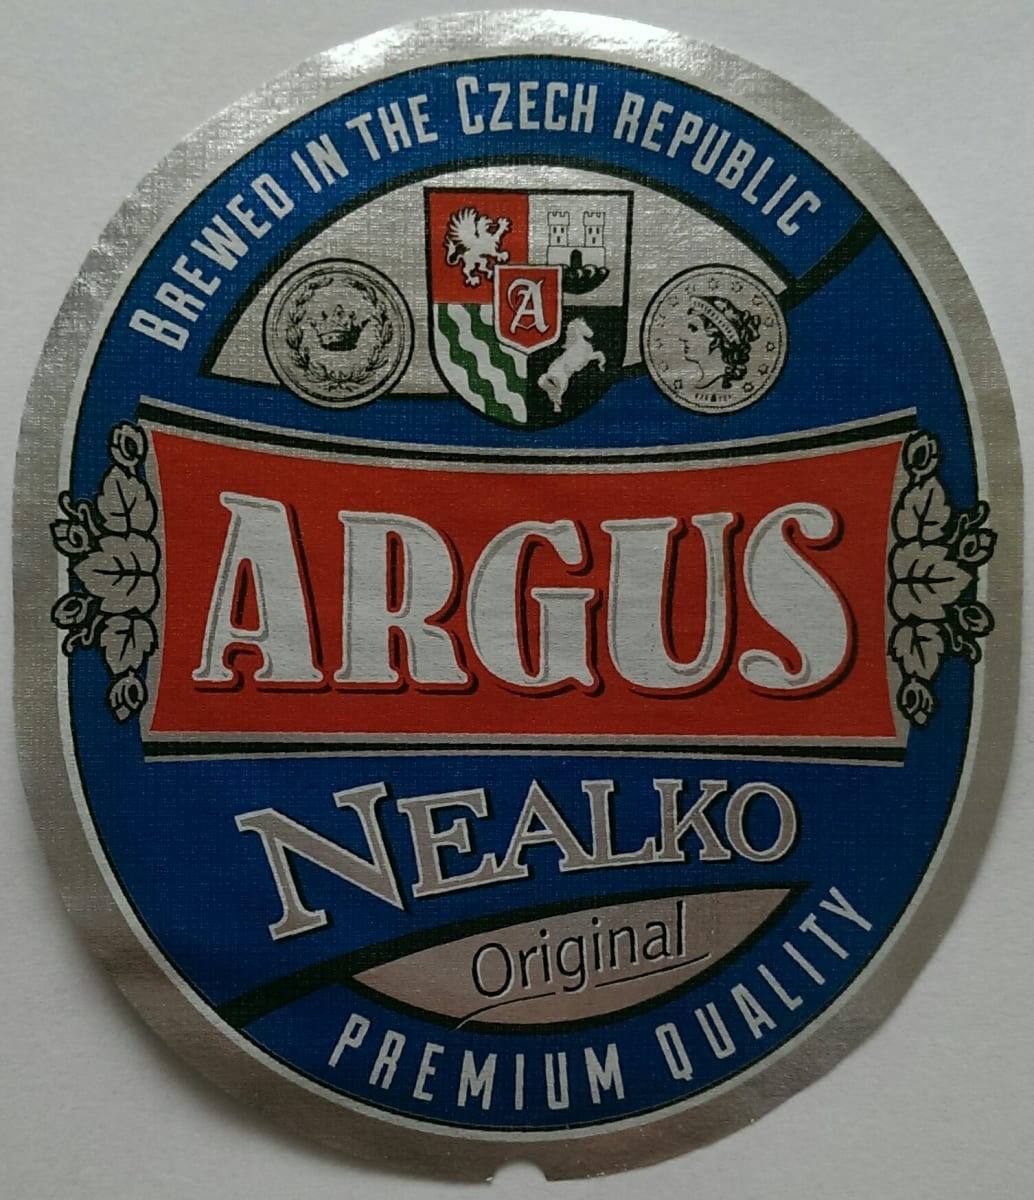 Argus Nealko